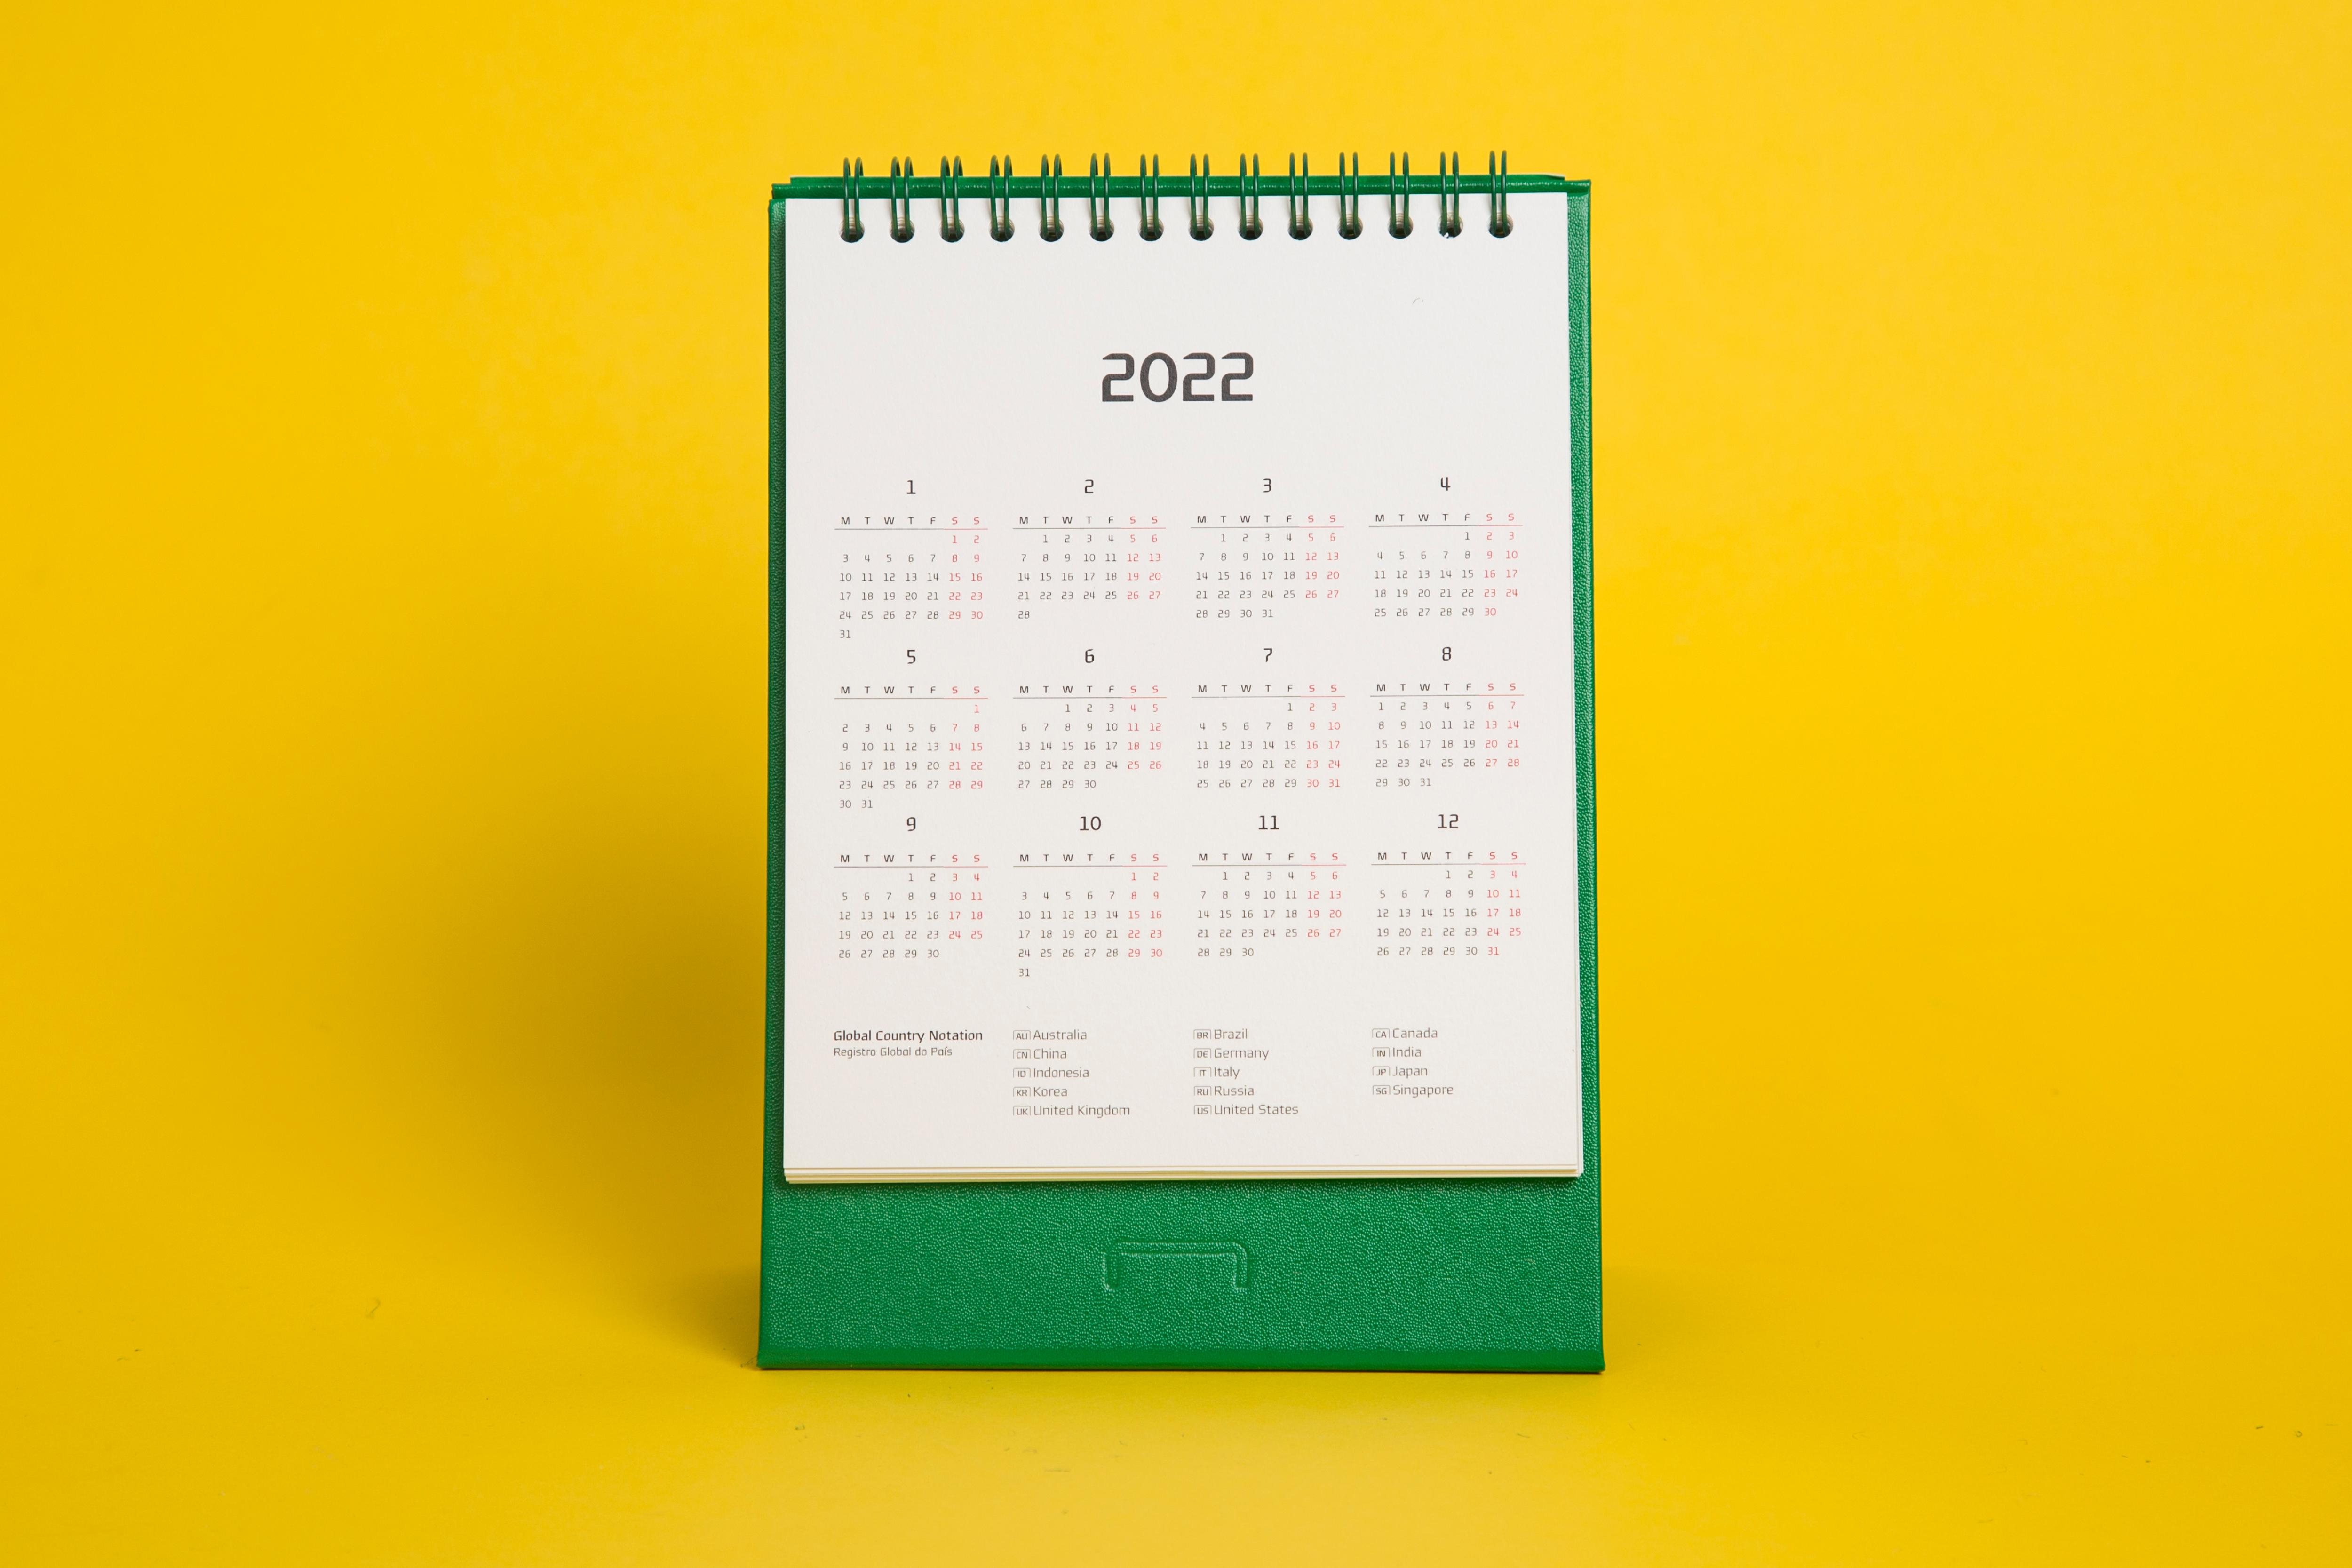 Hcc Calendar 2022 Hyundai Card Calendar & Planner 2022 - Vadesign2